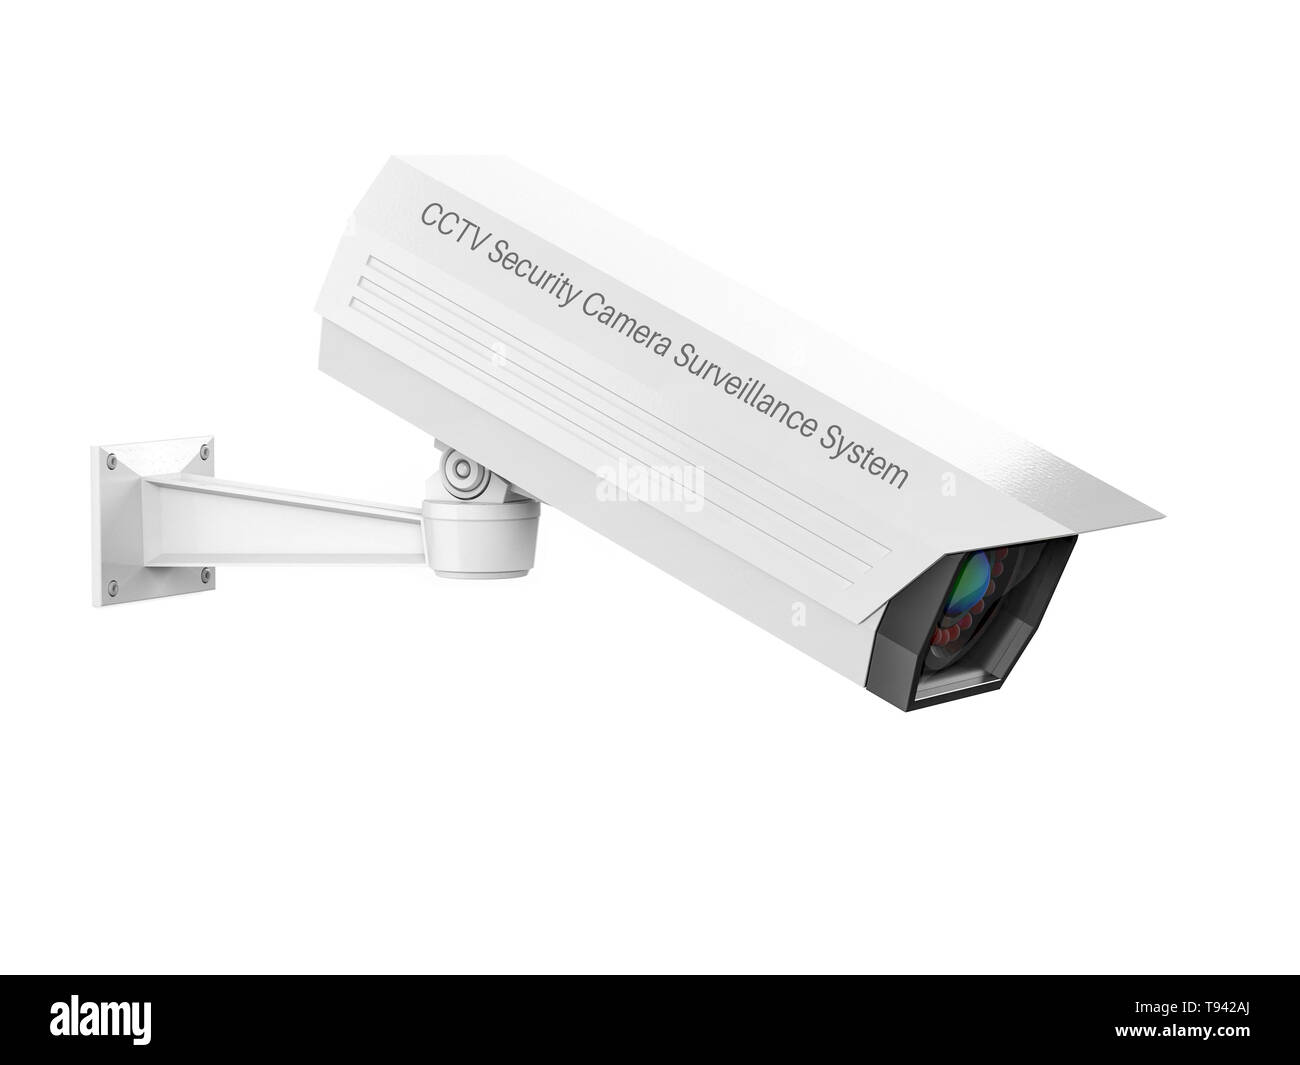 Bianco di sicurezza TVCC telecamera. 3D rendering immagine isolata su sfondo bianco Foto Stock